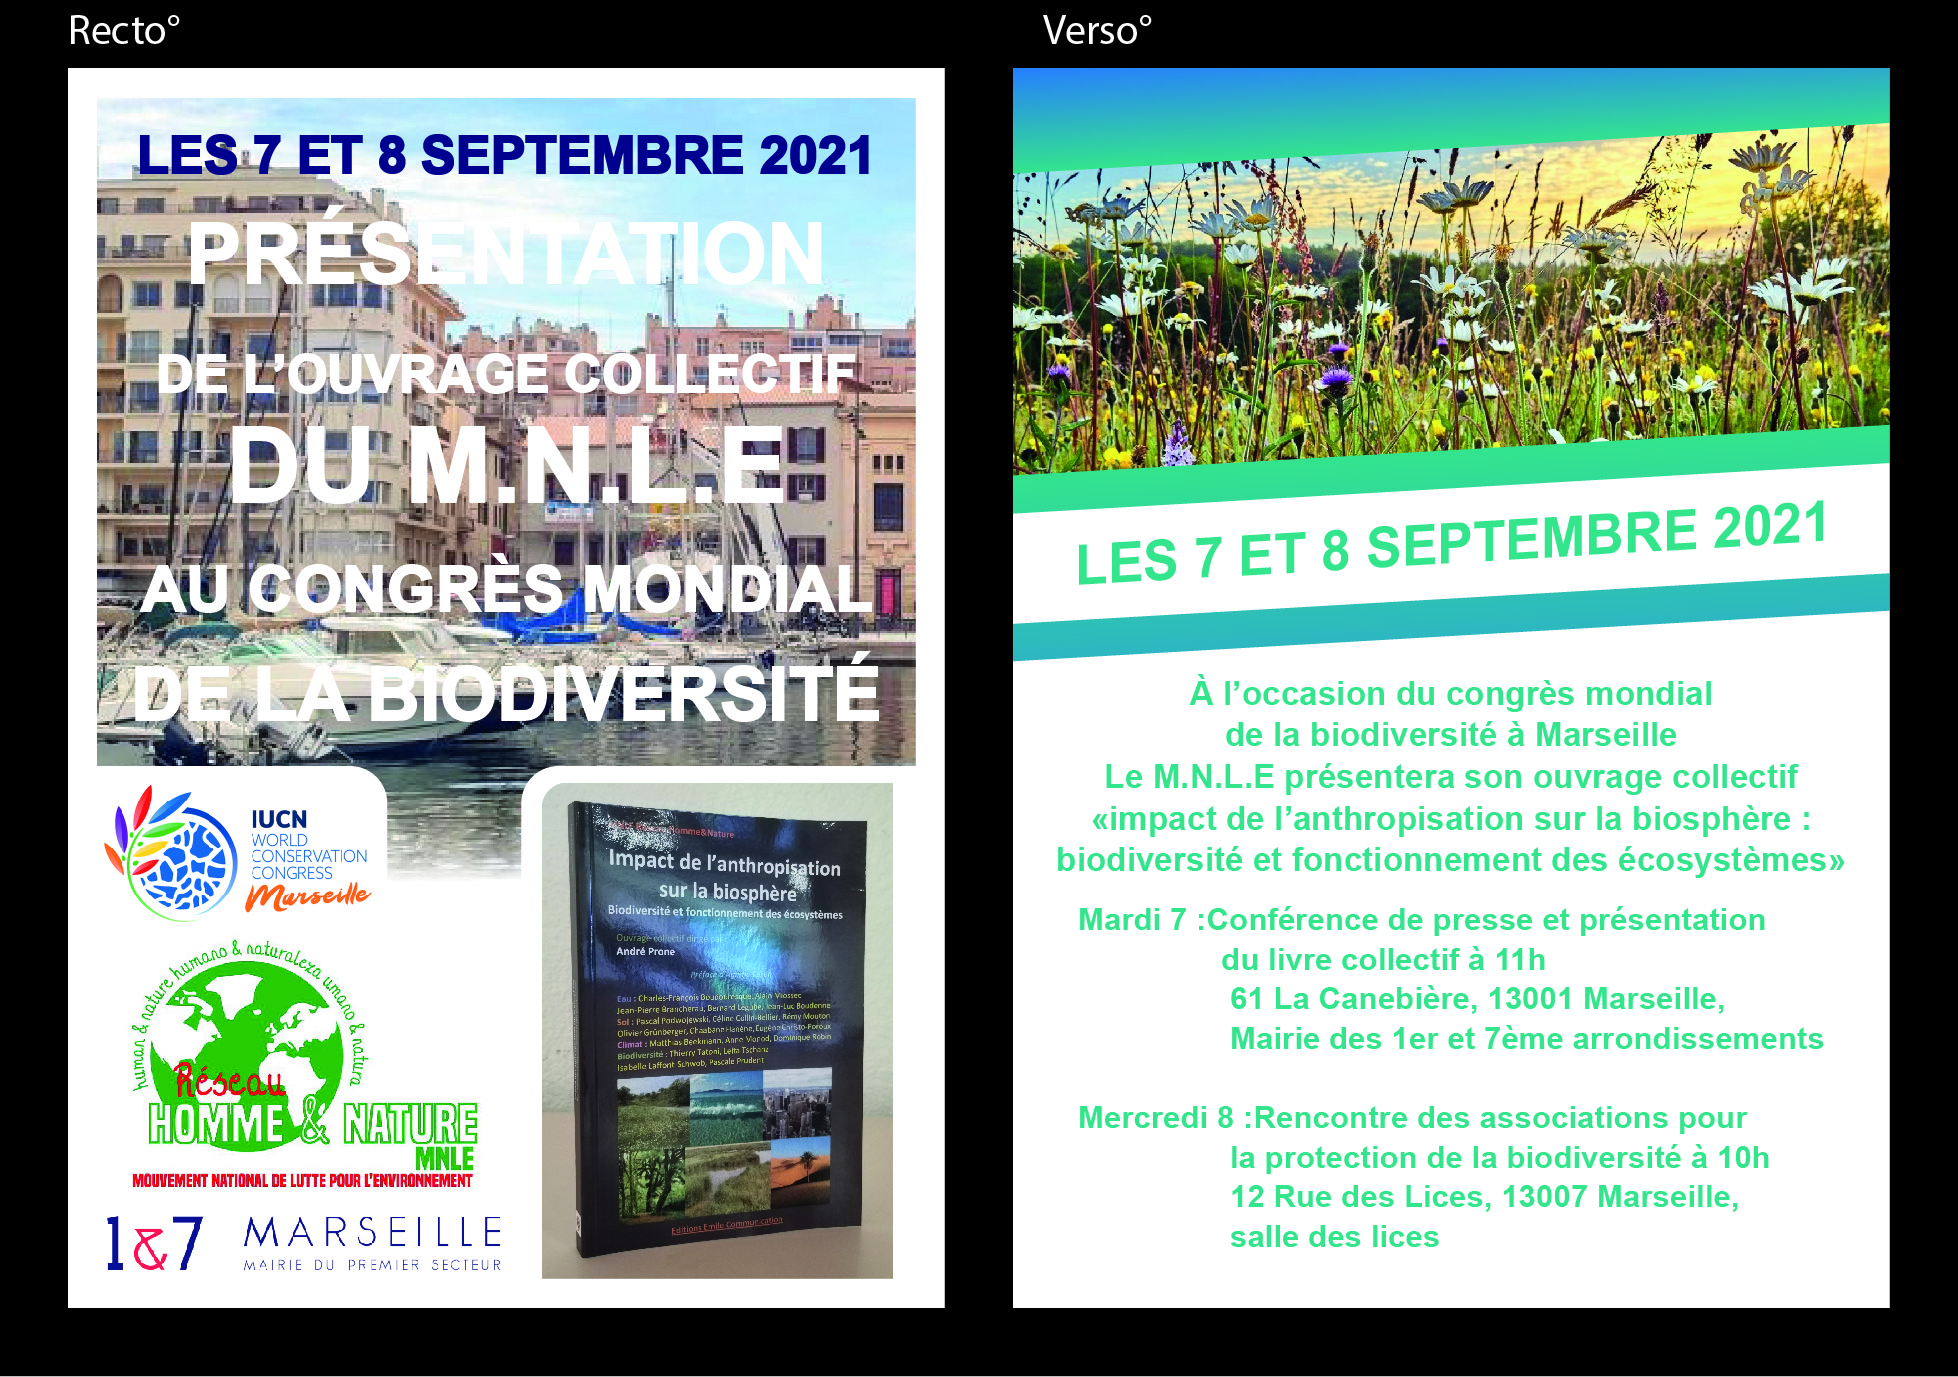 (2) #BiodiversitéCongrèsMondial : Présentation du livre collectif « Impact de l’anthropisation sur la biosphère » par le MNLE à La Mairie du Premier Secteur.